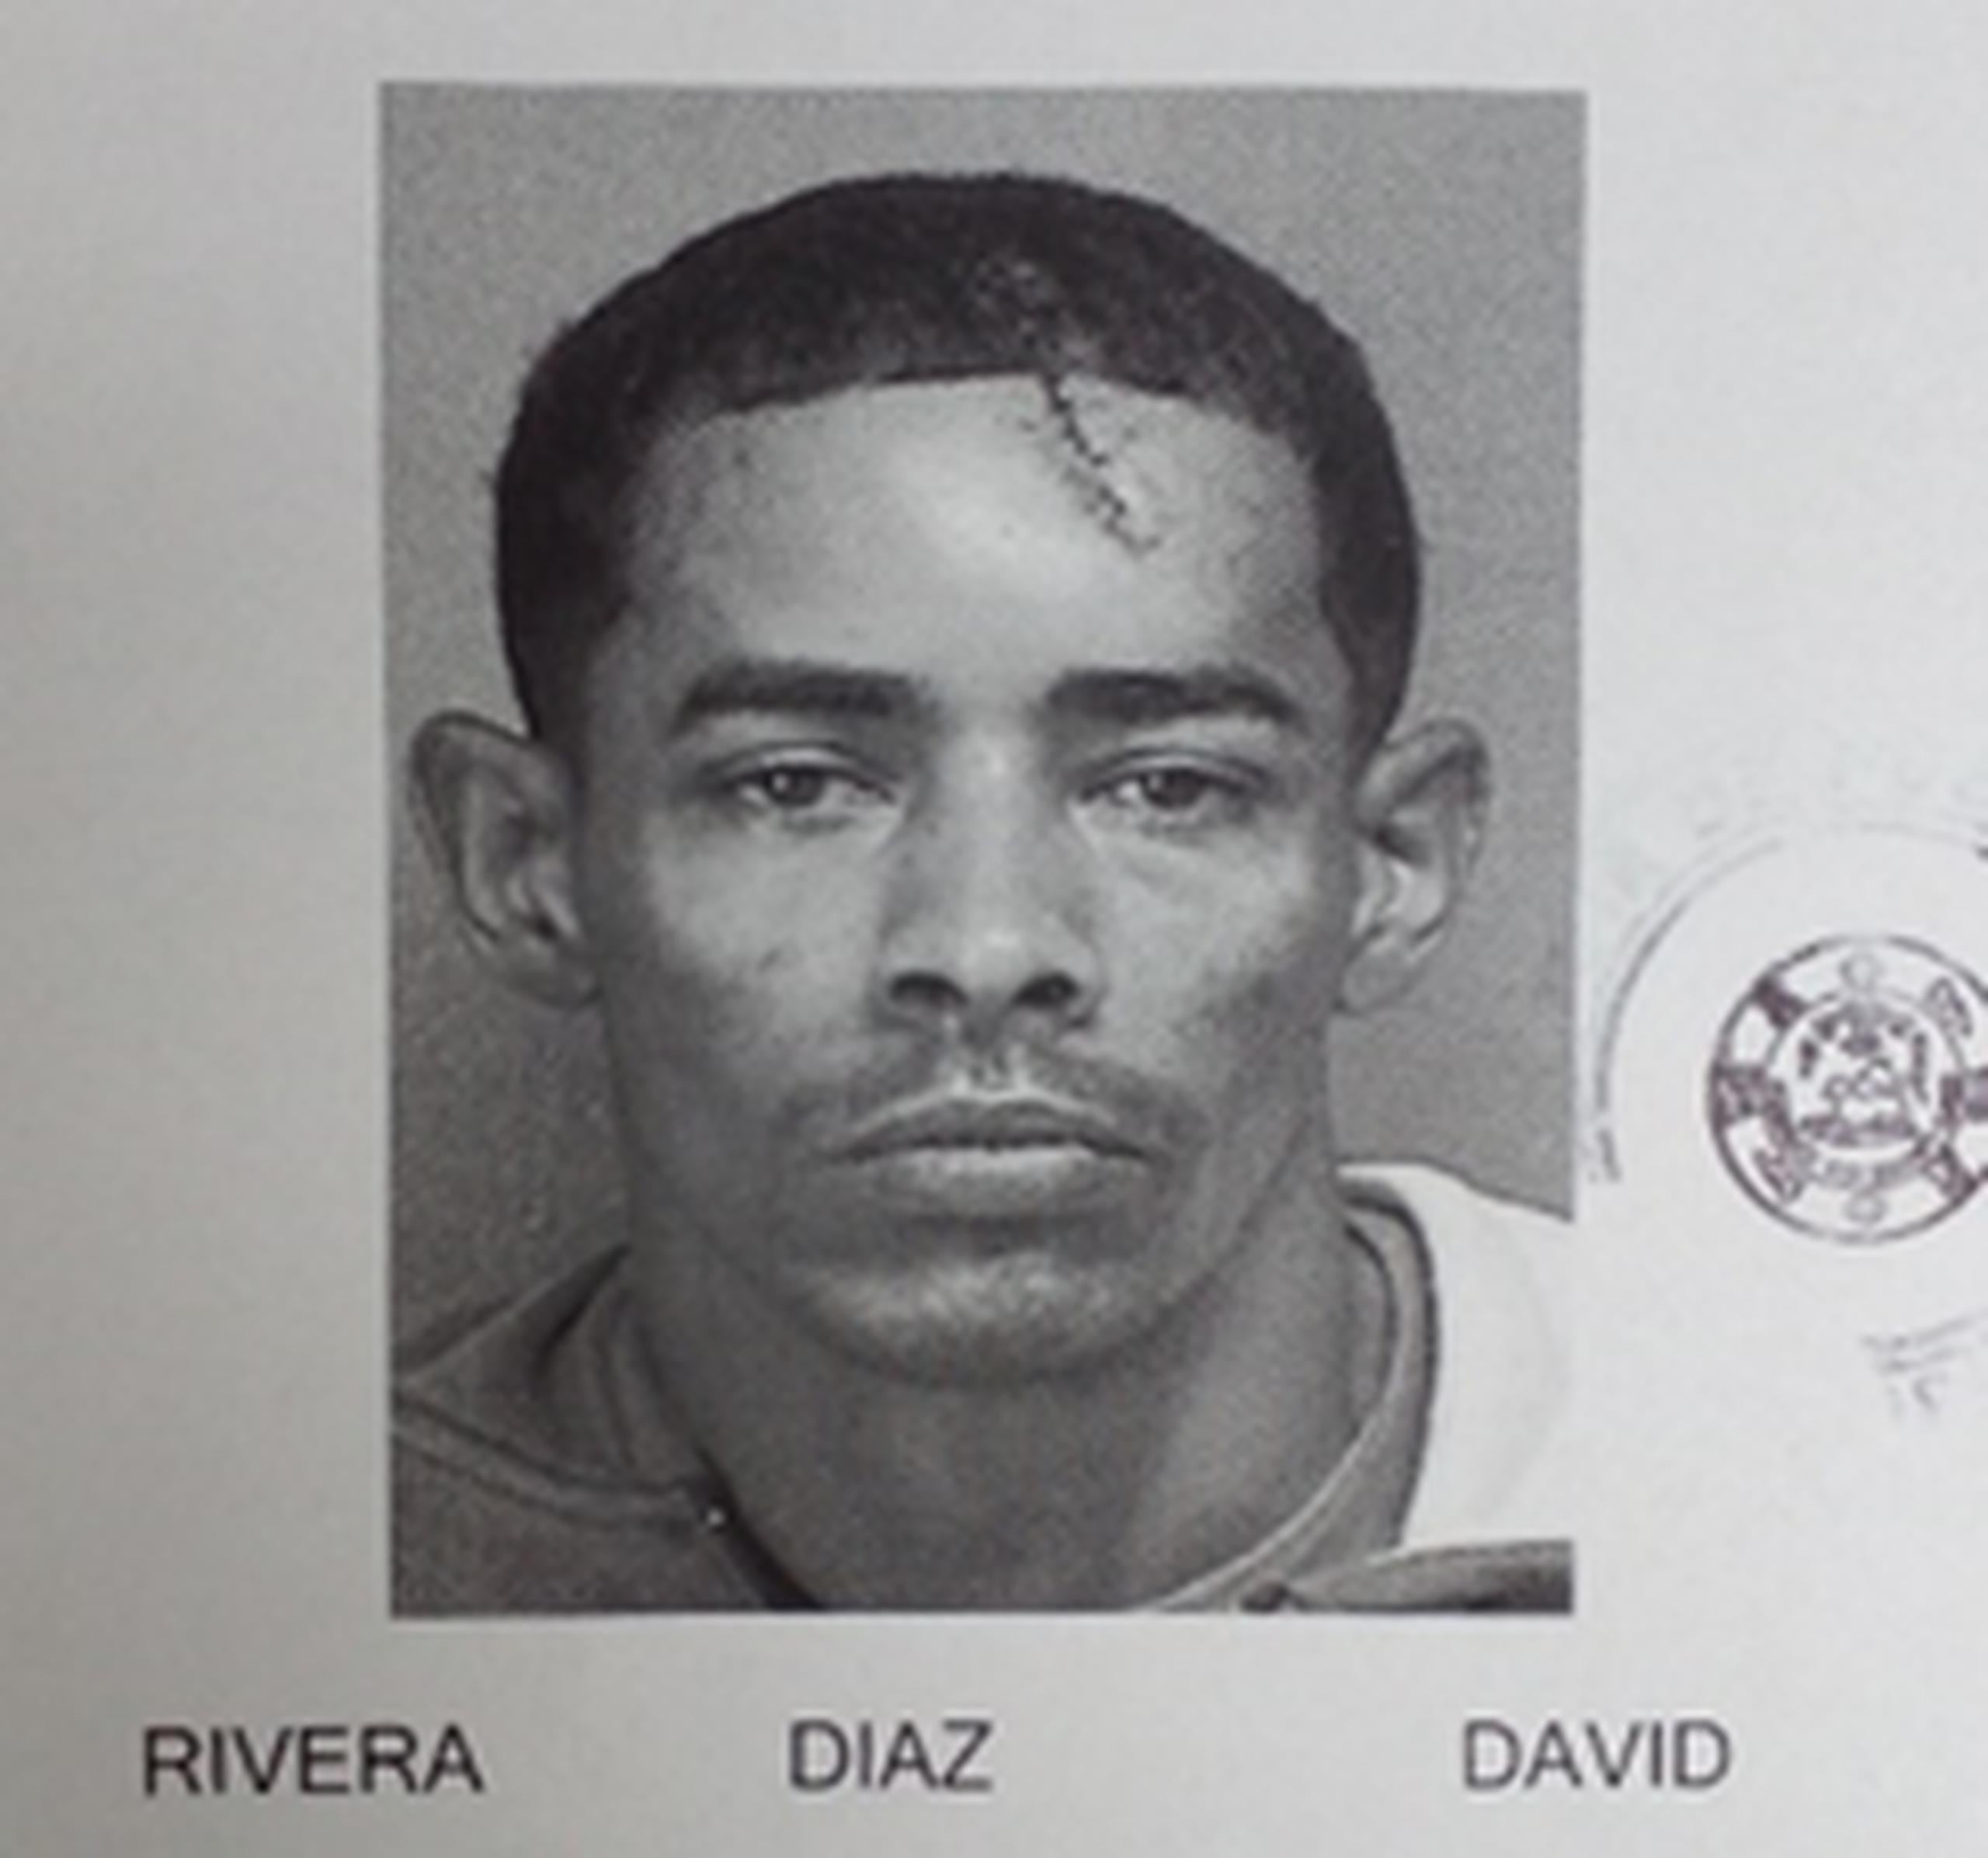 Las autoridades buscan a David Rivera Díaz, contra quien pesan dos órdenes de arresto por violación a la Ley de Armas y el hurto de un catalítico.